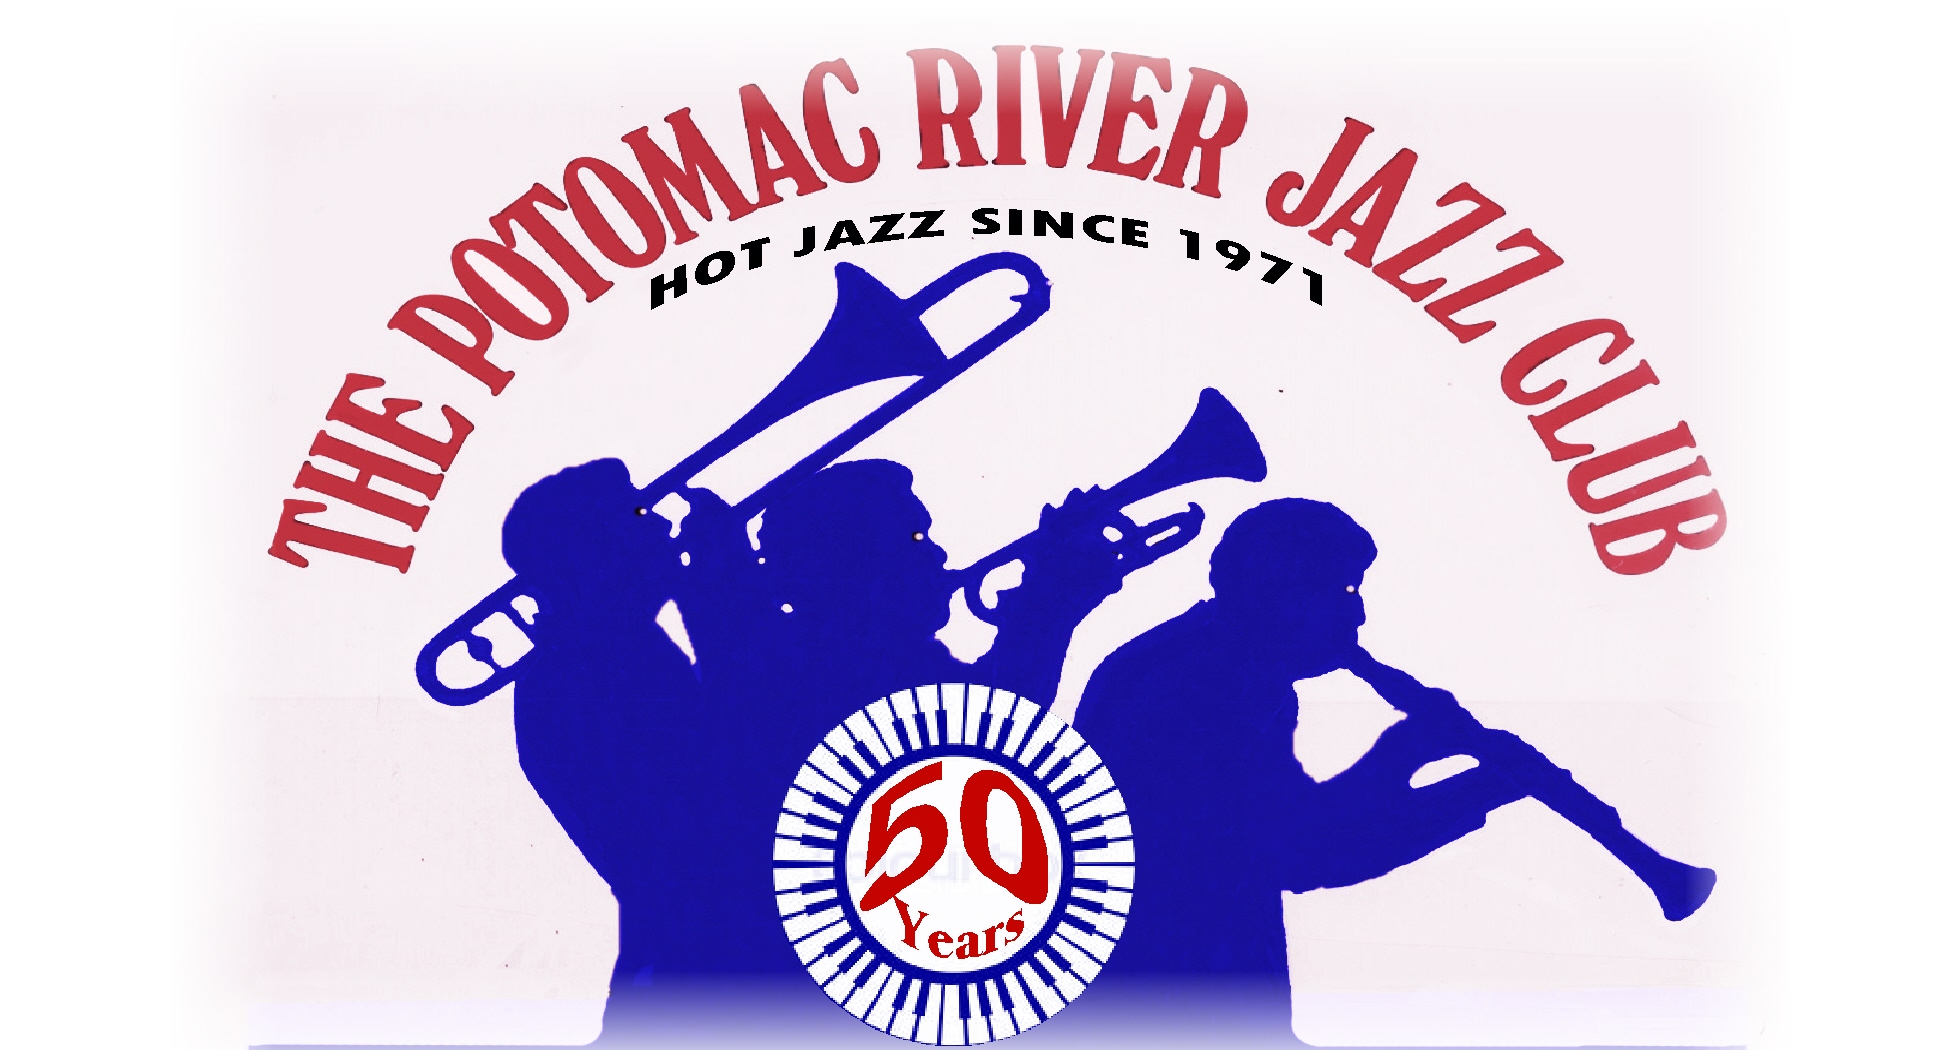 Potomac River Jazz Club [www.prjc.org ]